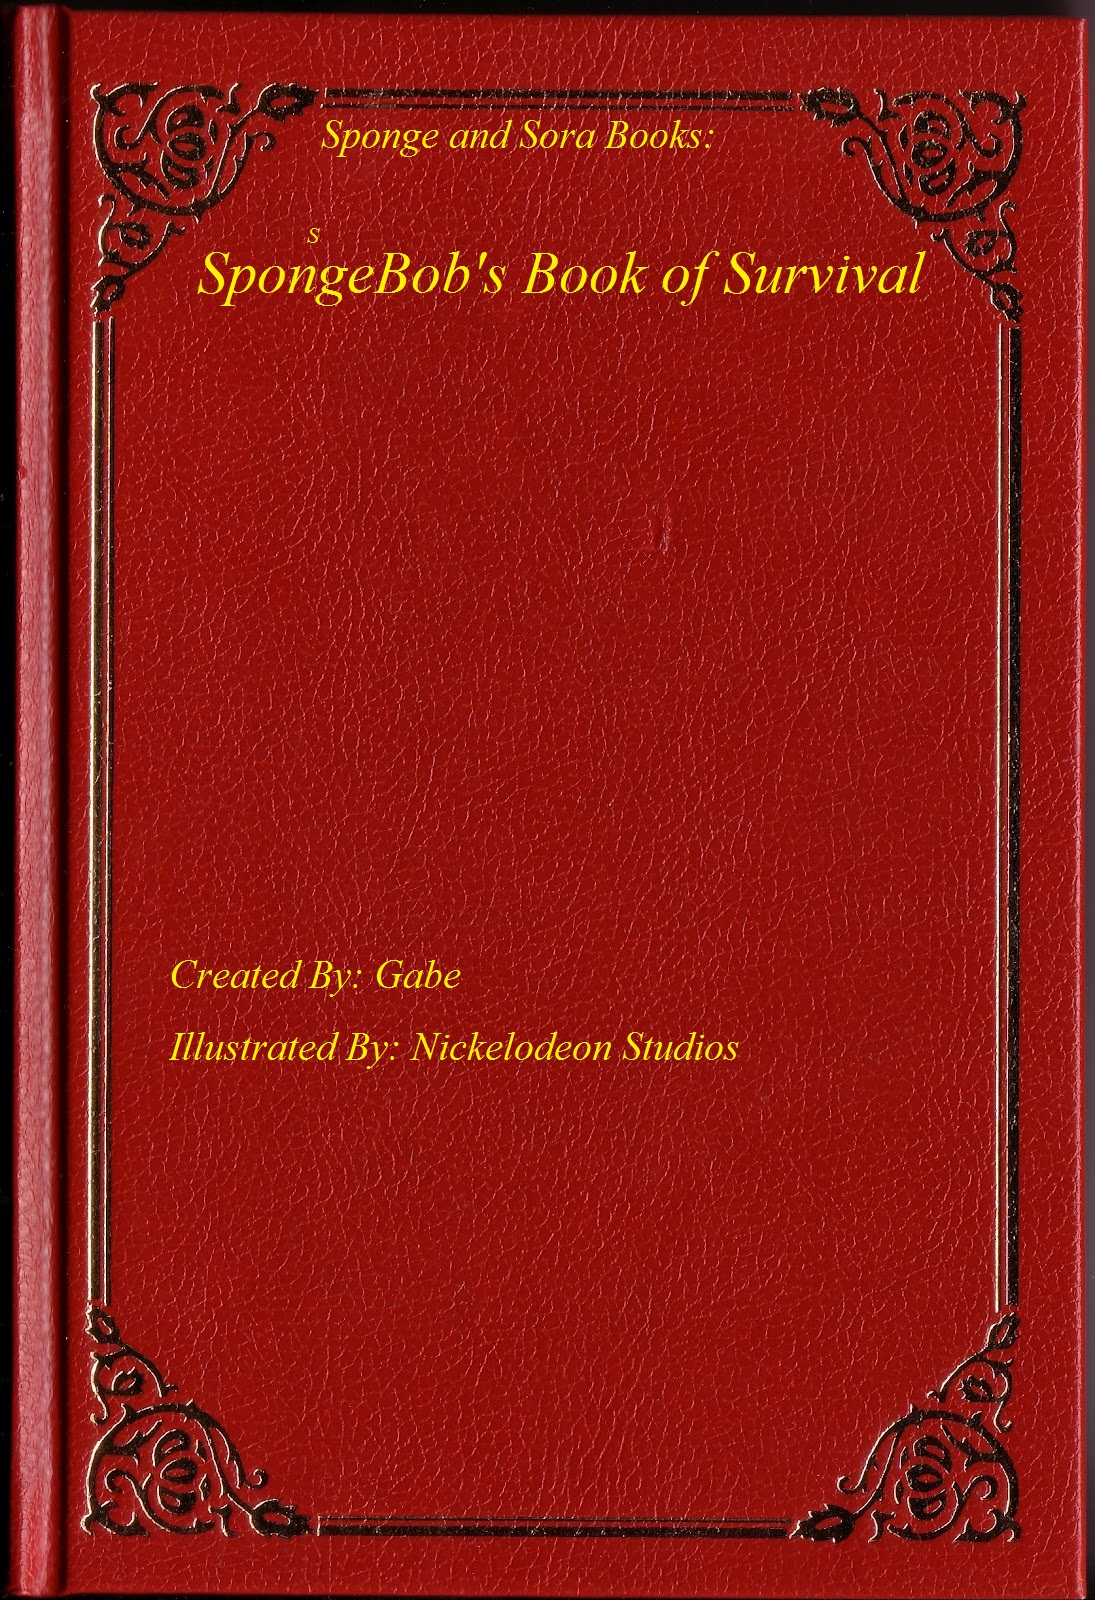 Image - Blank book cover.jpg - The Sponge and Sorapedia Wiki